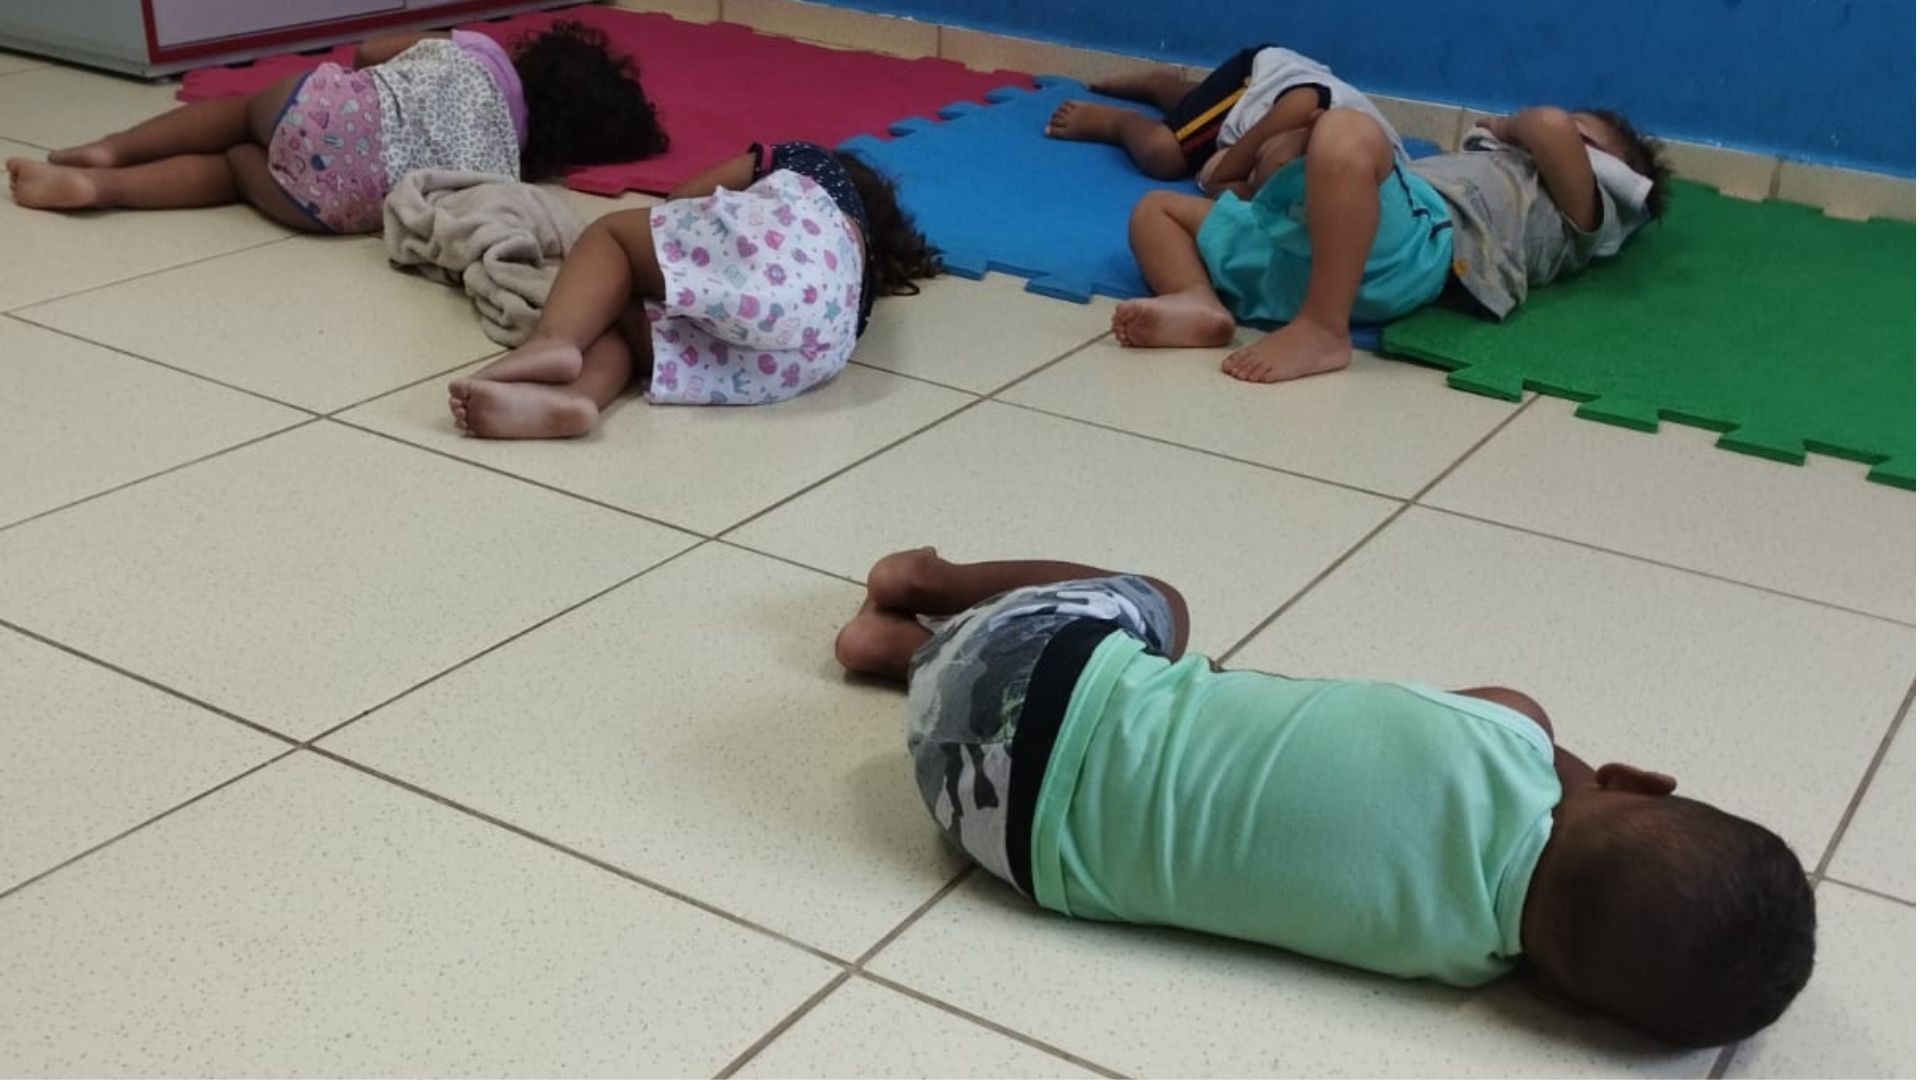 Mães relatam preocupação após denúncia de crianças dormindo no chão de creche: 